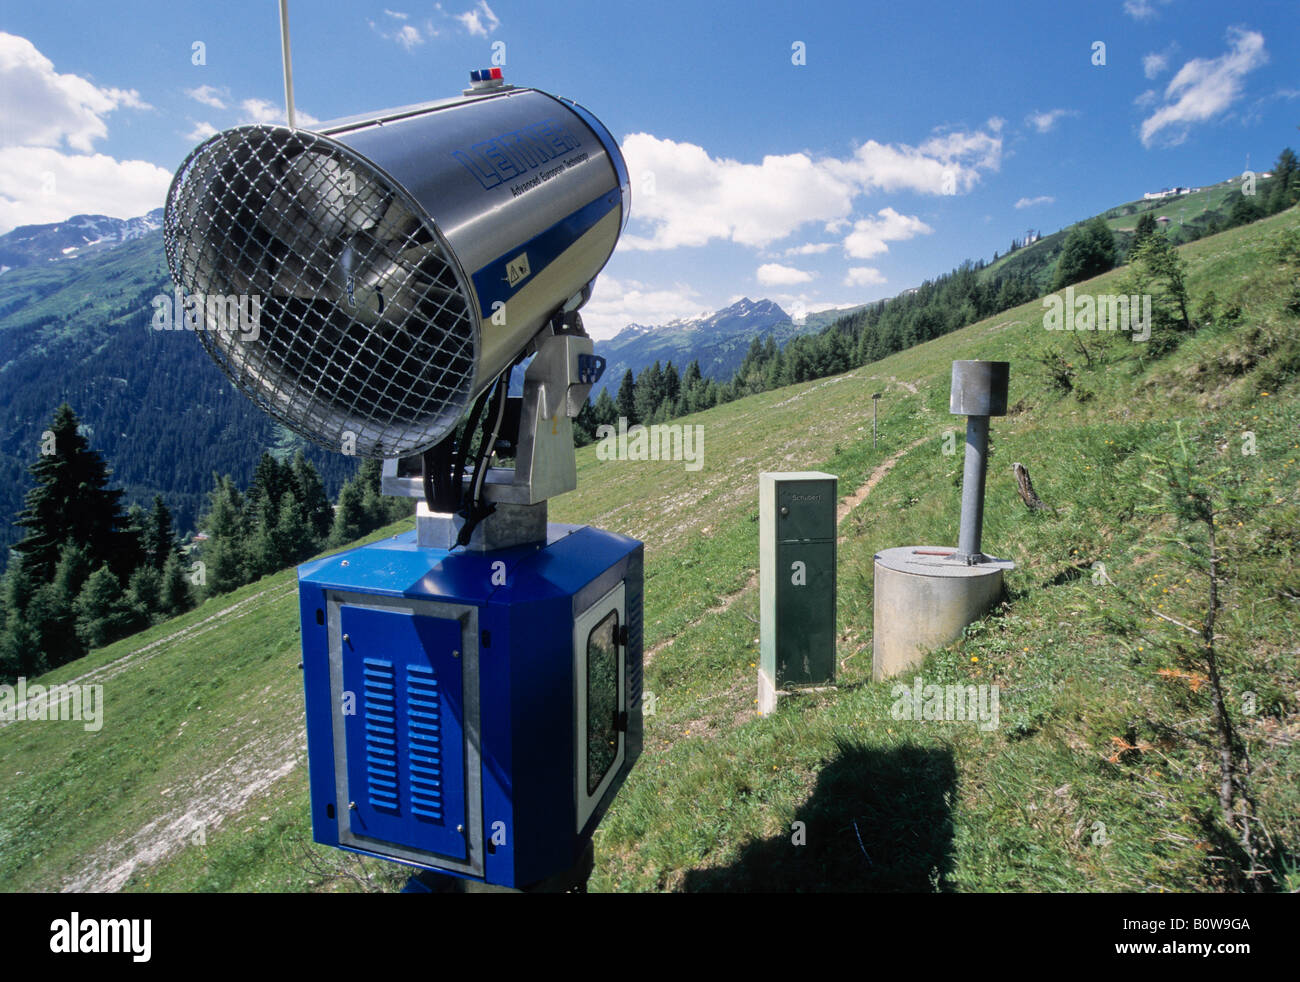 Cañón de arma de fuego o de nieve en una pista de esquí en verano, verdes pastizales alpinos, Alpes, Landeck, Tirol, Austria, Europa Foto de stock